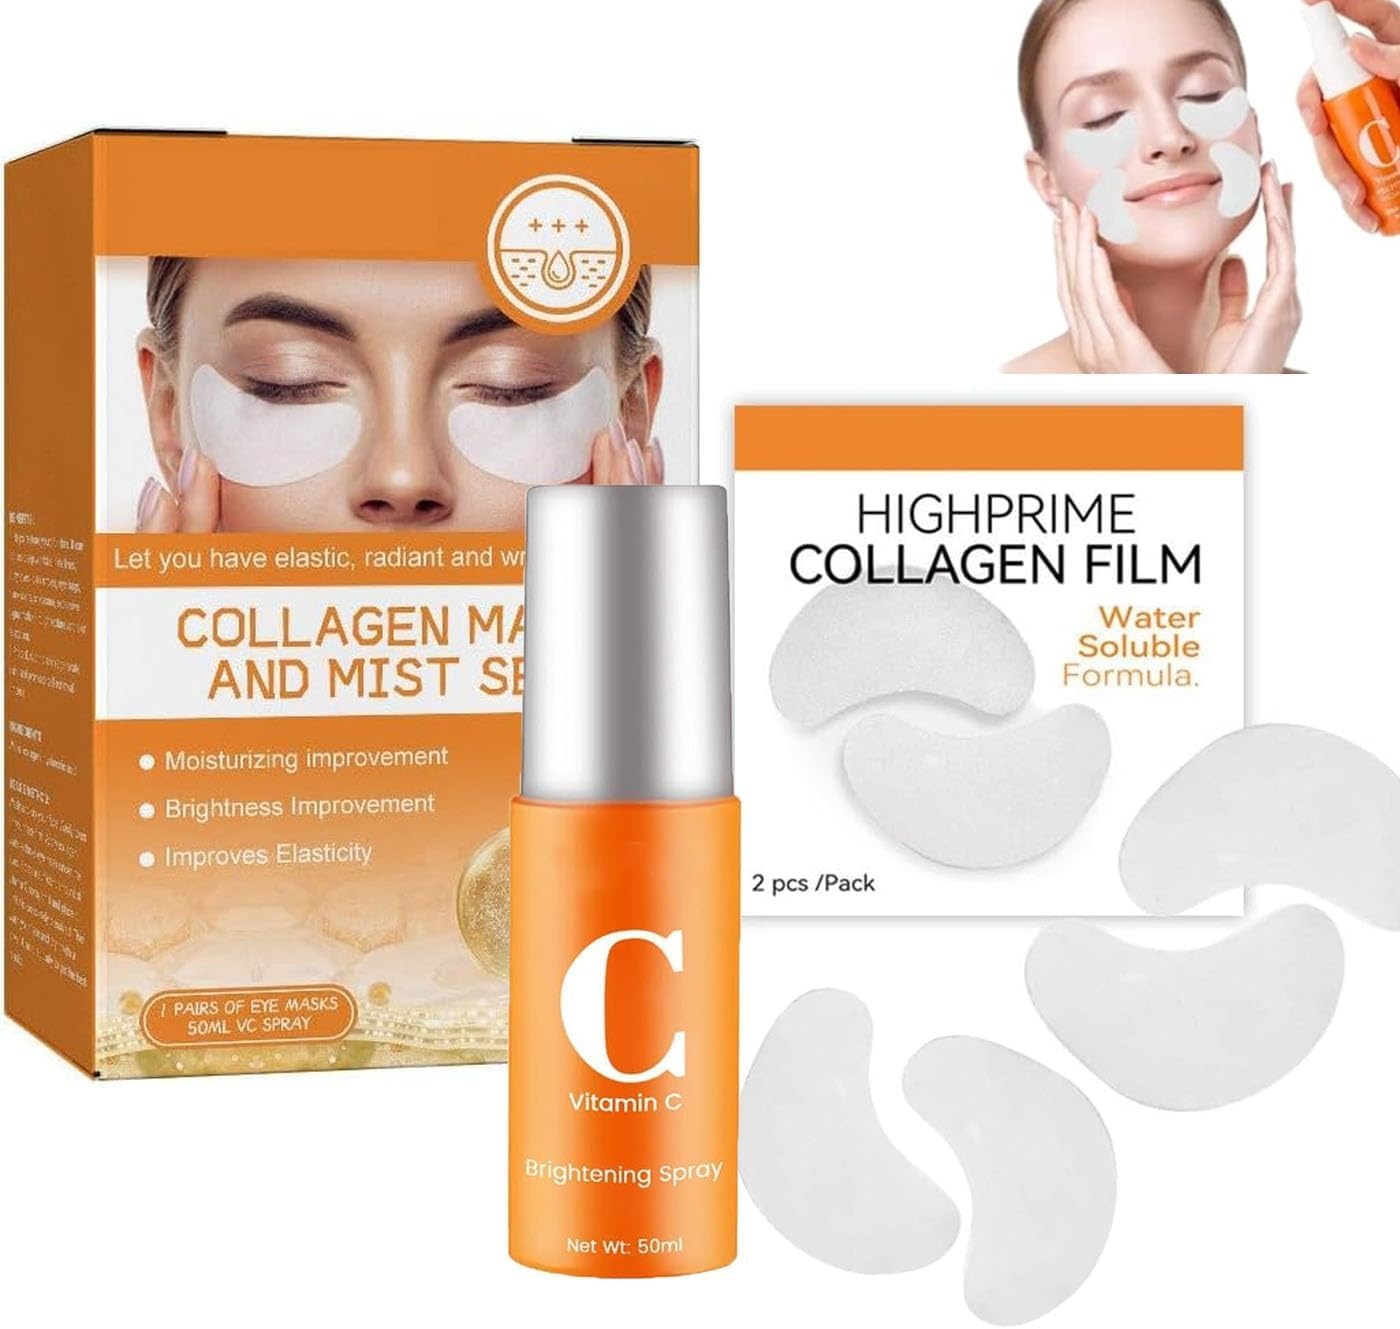 Korean Technology Soluble Collagen Film, High Prime Collagen Film and Mist, Collagen Film & Mist Kit, High Prime Collagen Film Face Mask Suitable for All Skin Types (1set)